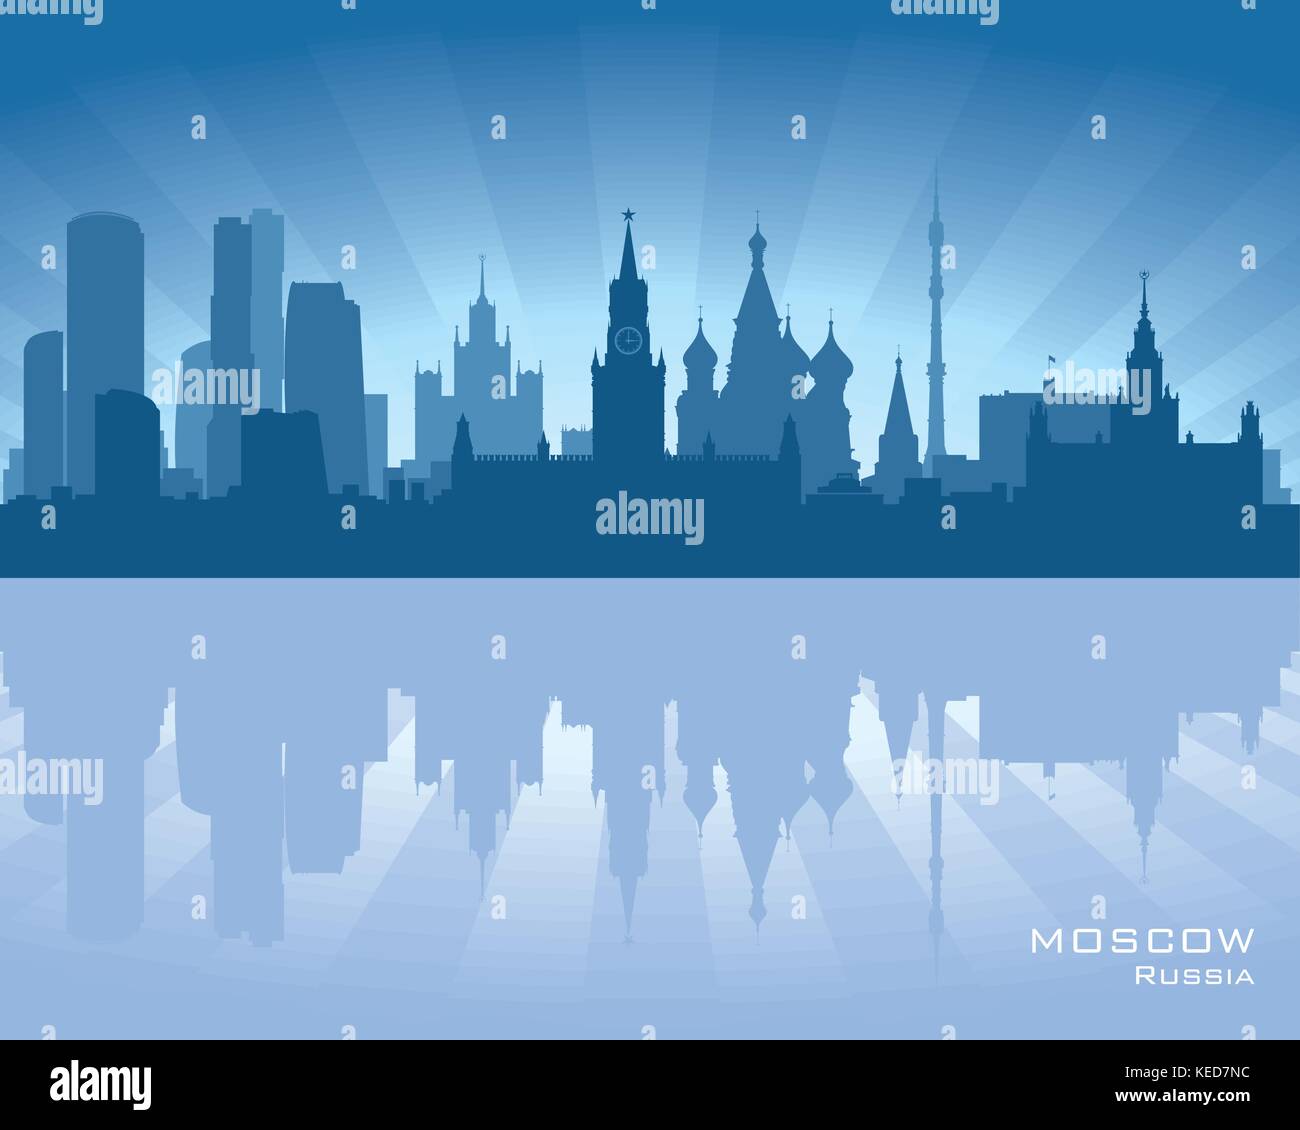 Moskau, Russland-Skyline-Abbildung mit Spiegelung im Wasser Stock Vektor